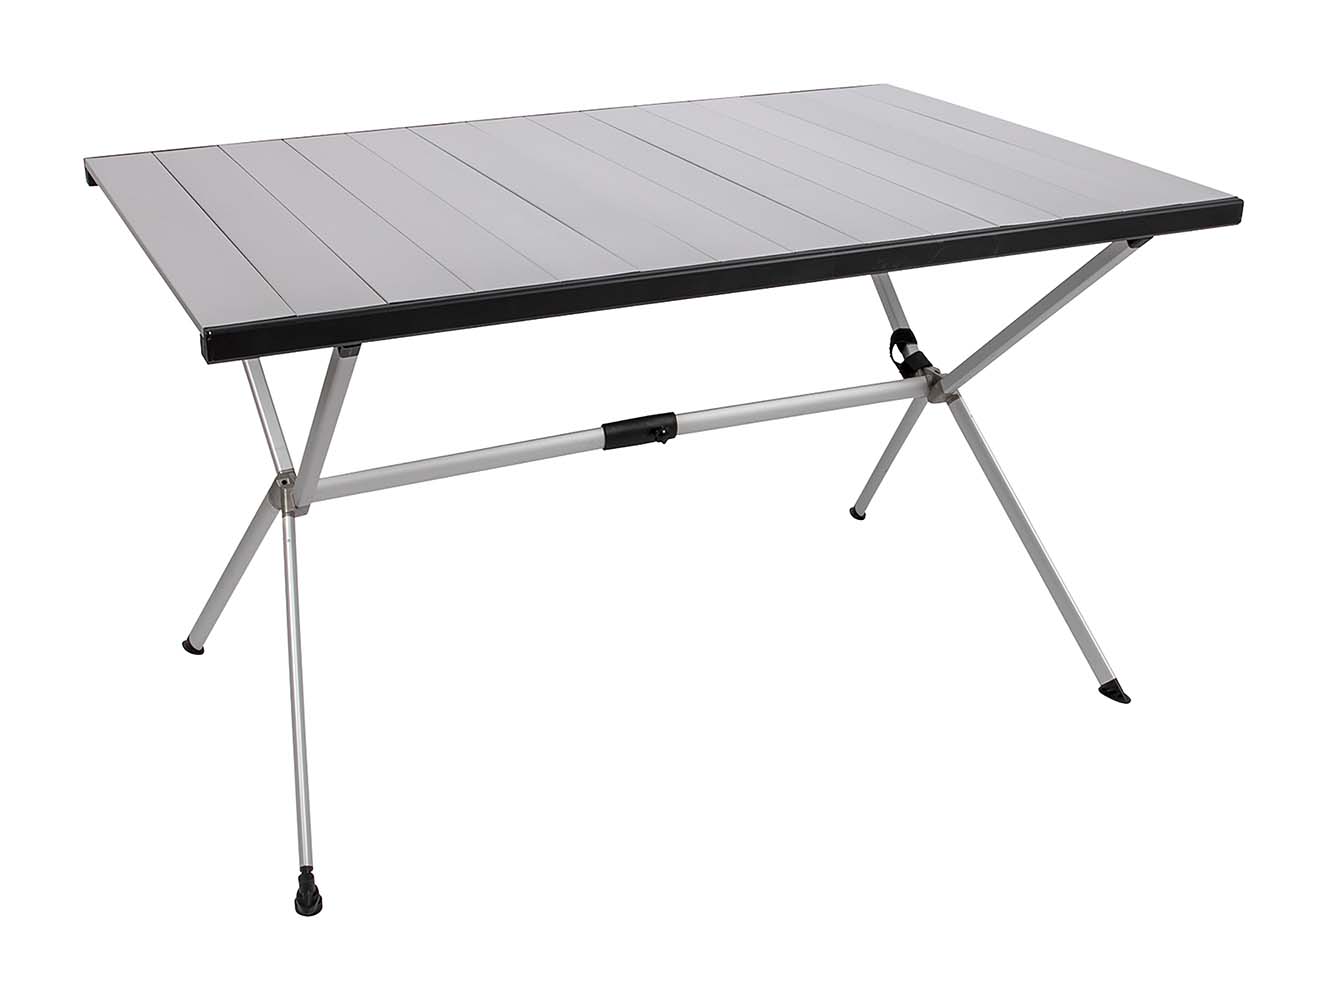 1404438 Een zeer stabiele, alumunium kruispoot tafel. Deze tafel is volledig opklapbaar en handig mee te nemen. Het tafelblad kan volledig opgerold worden en de poten kunnen ook worden ingeklapt.